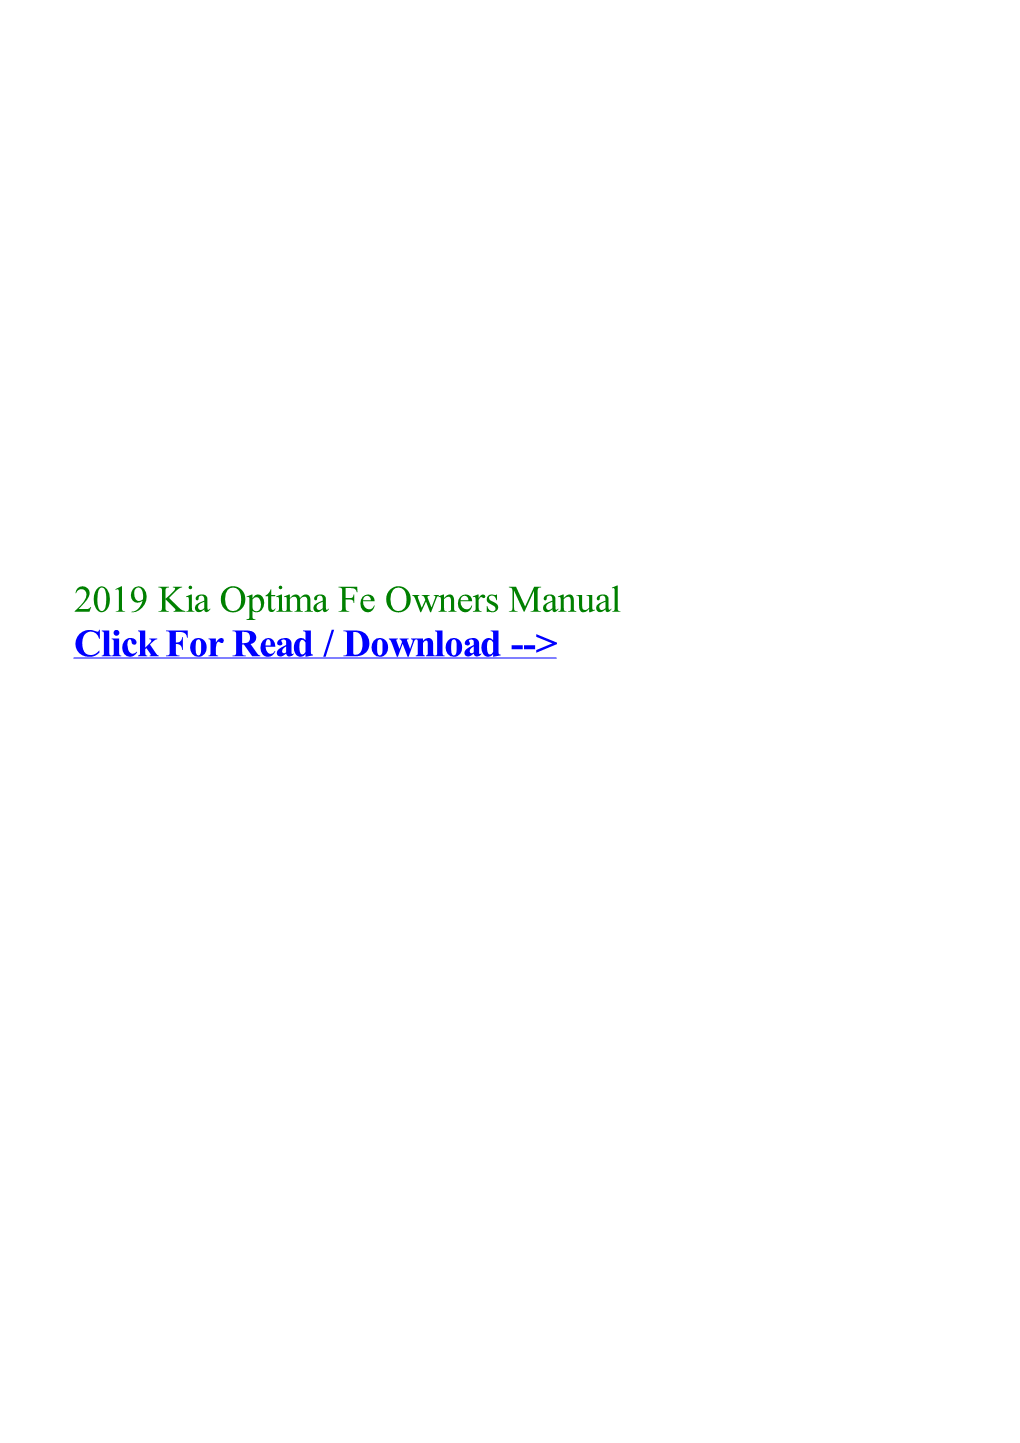 2019 Kia Optima Fe Owners Manual.Pdf